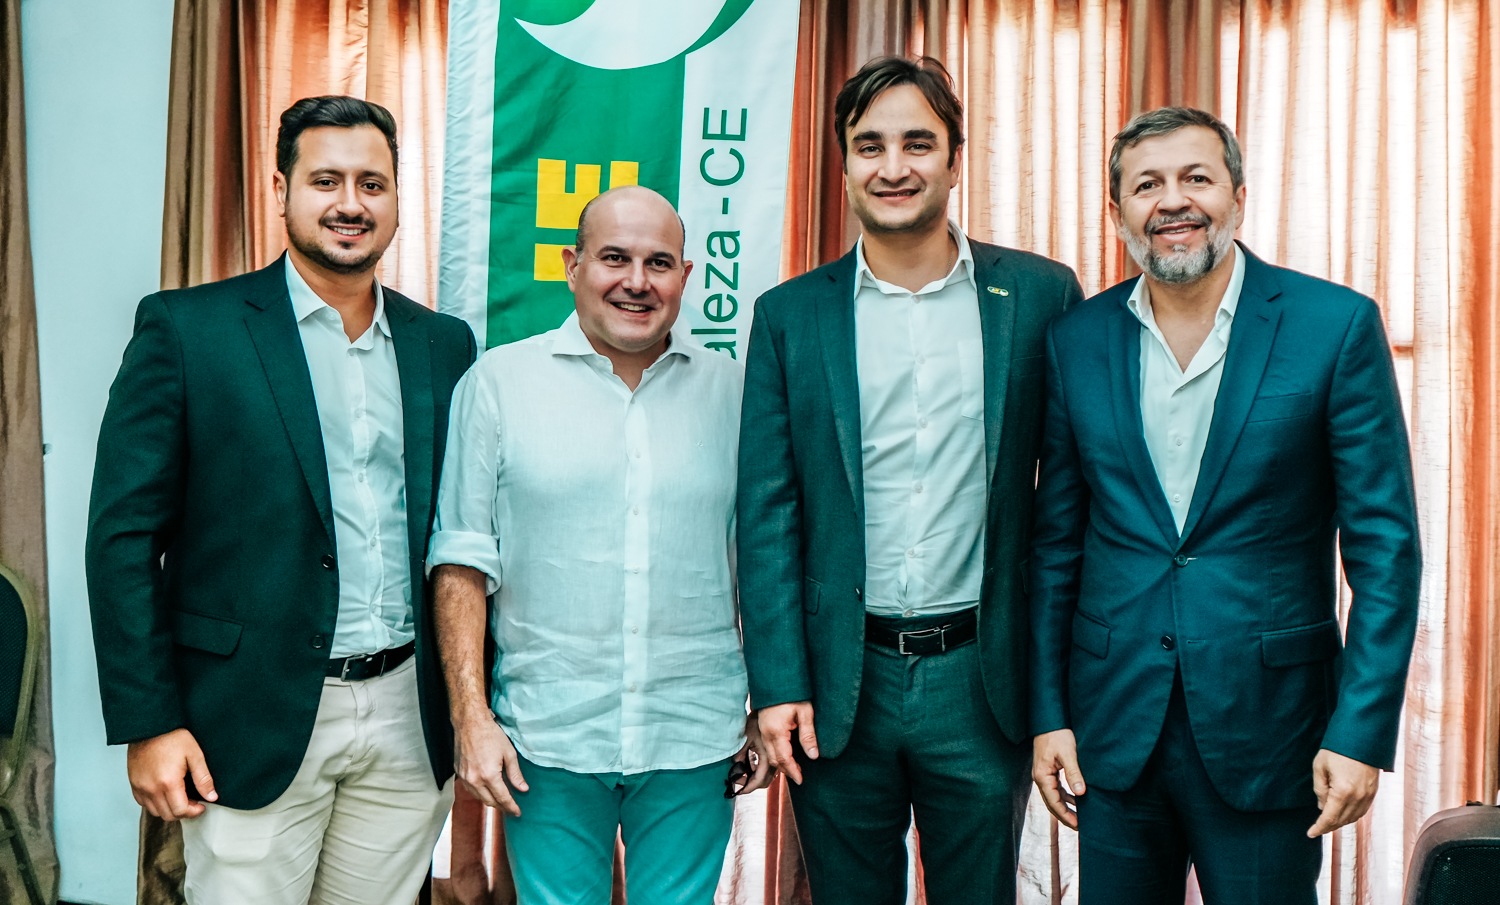 Ex-prefeito Roberto Cláudio fala sobre empreendedorismo e gestão pública em almoço político da AJE – Fortaleza